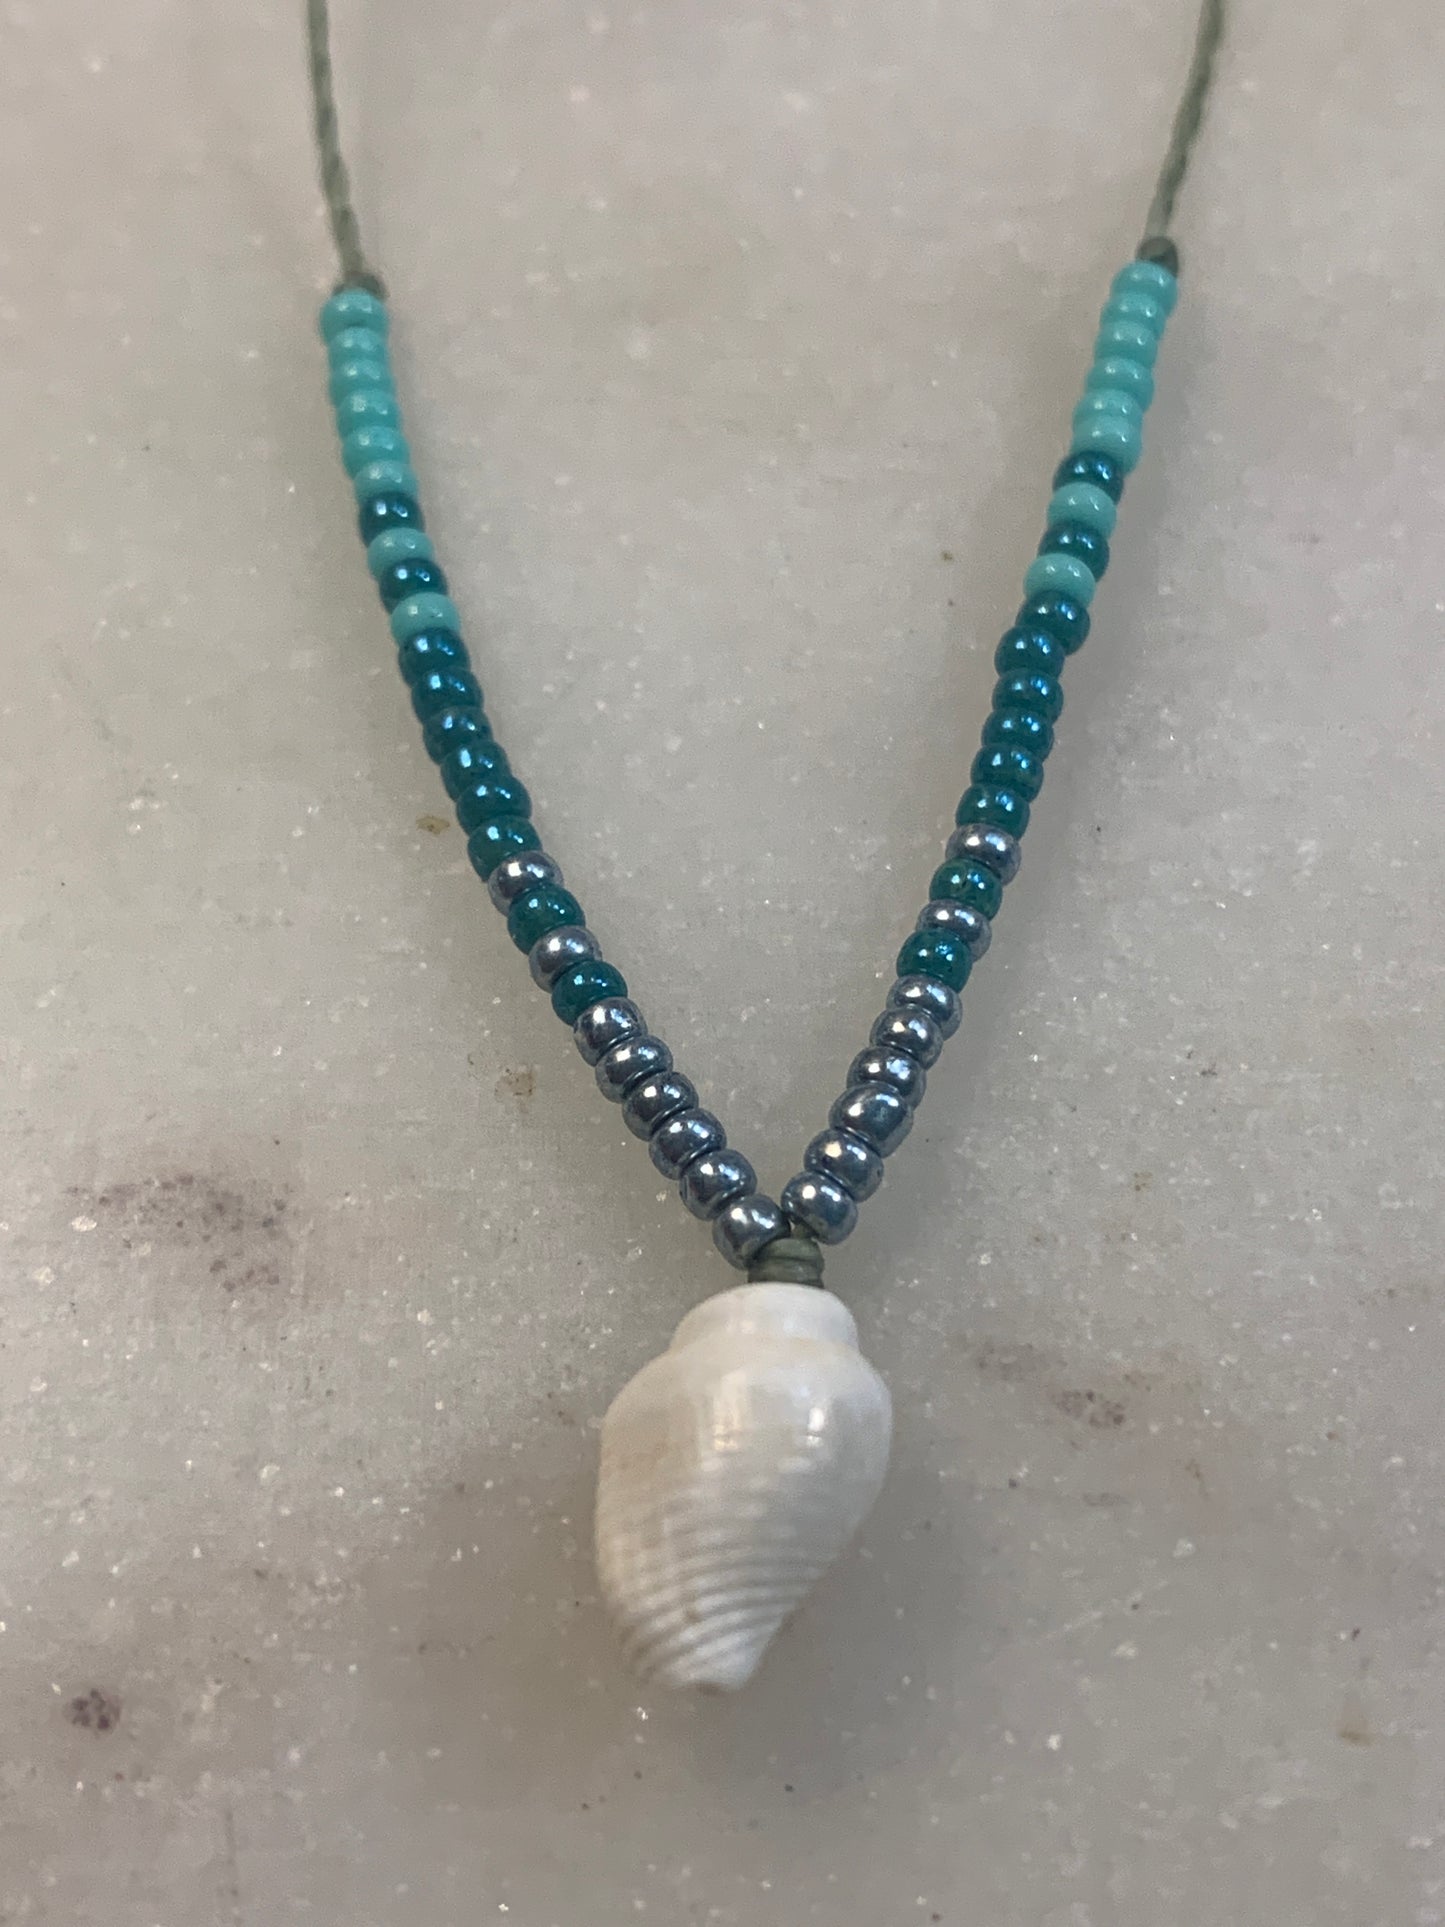 Adjustable bracelet, seed beads